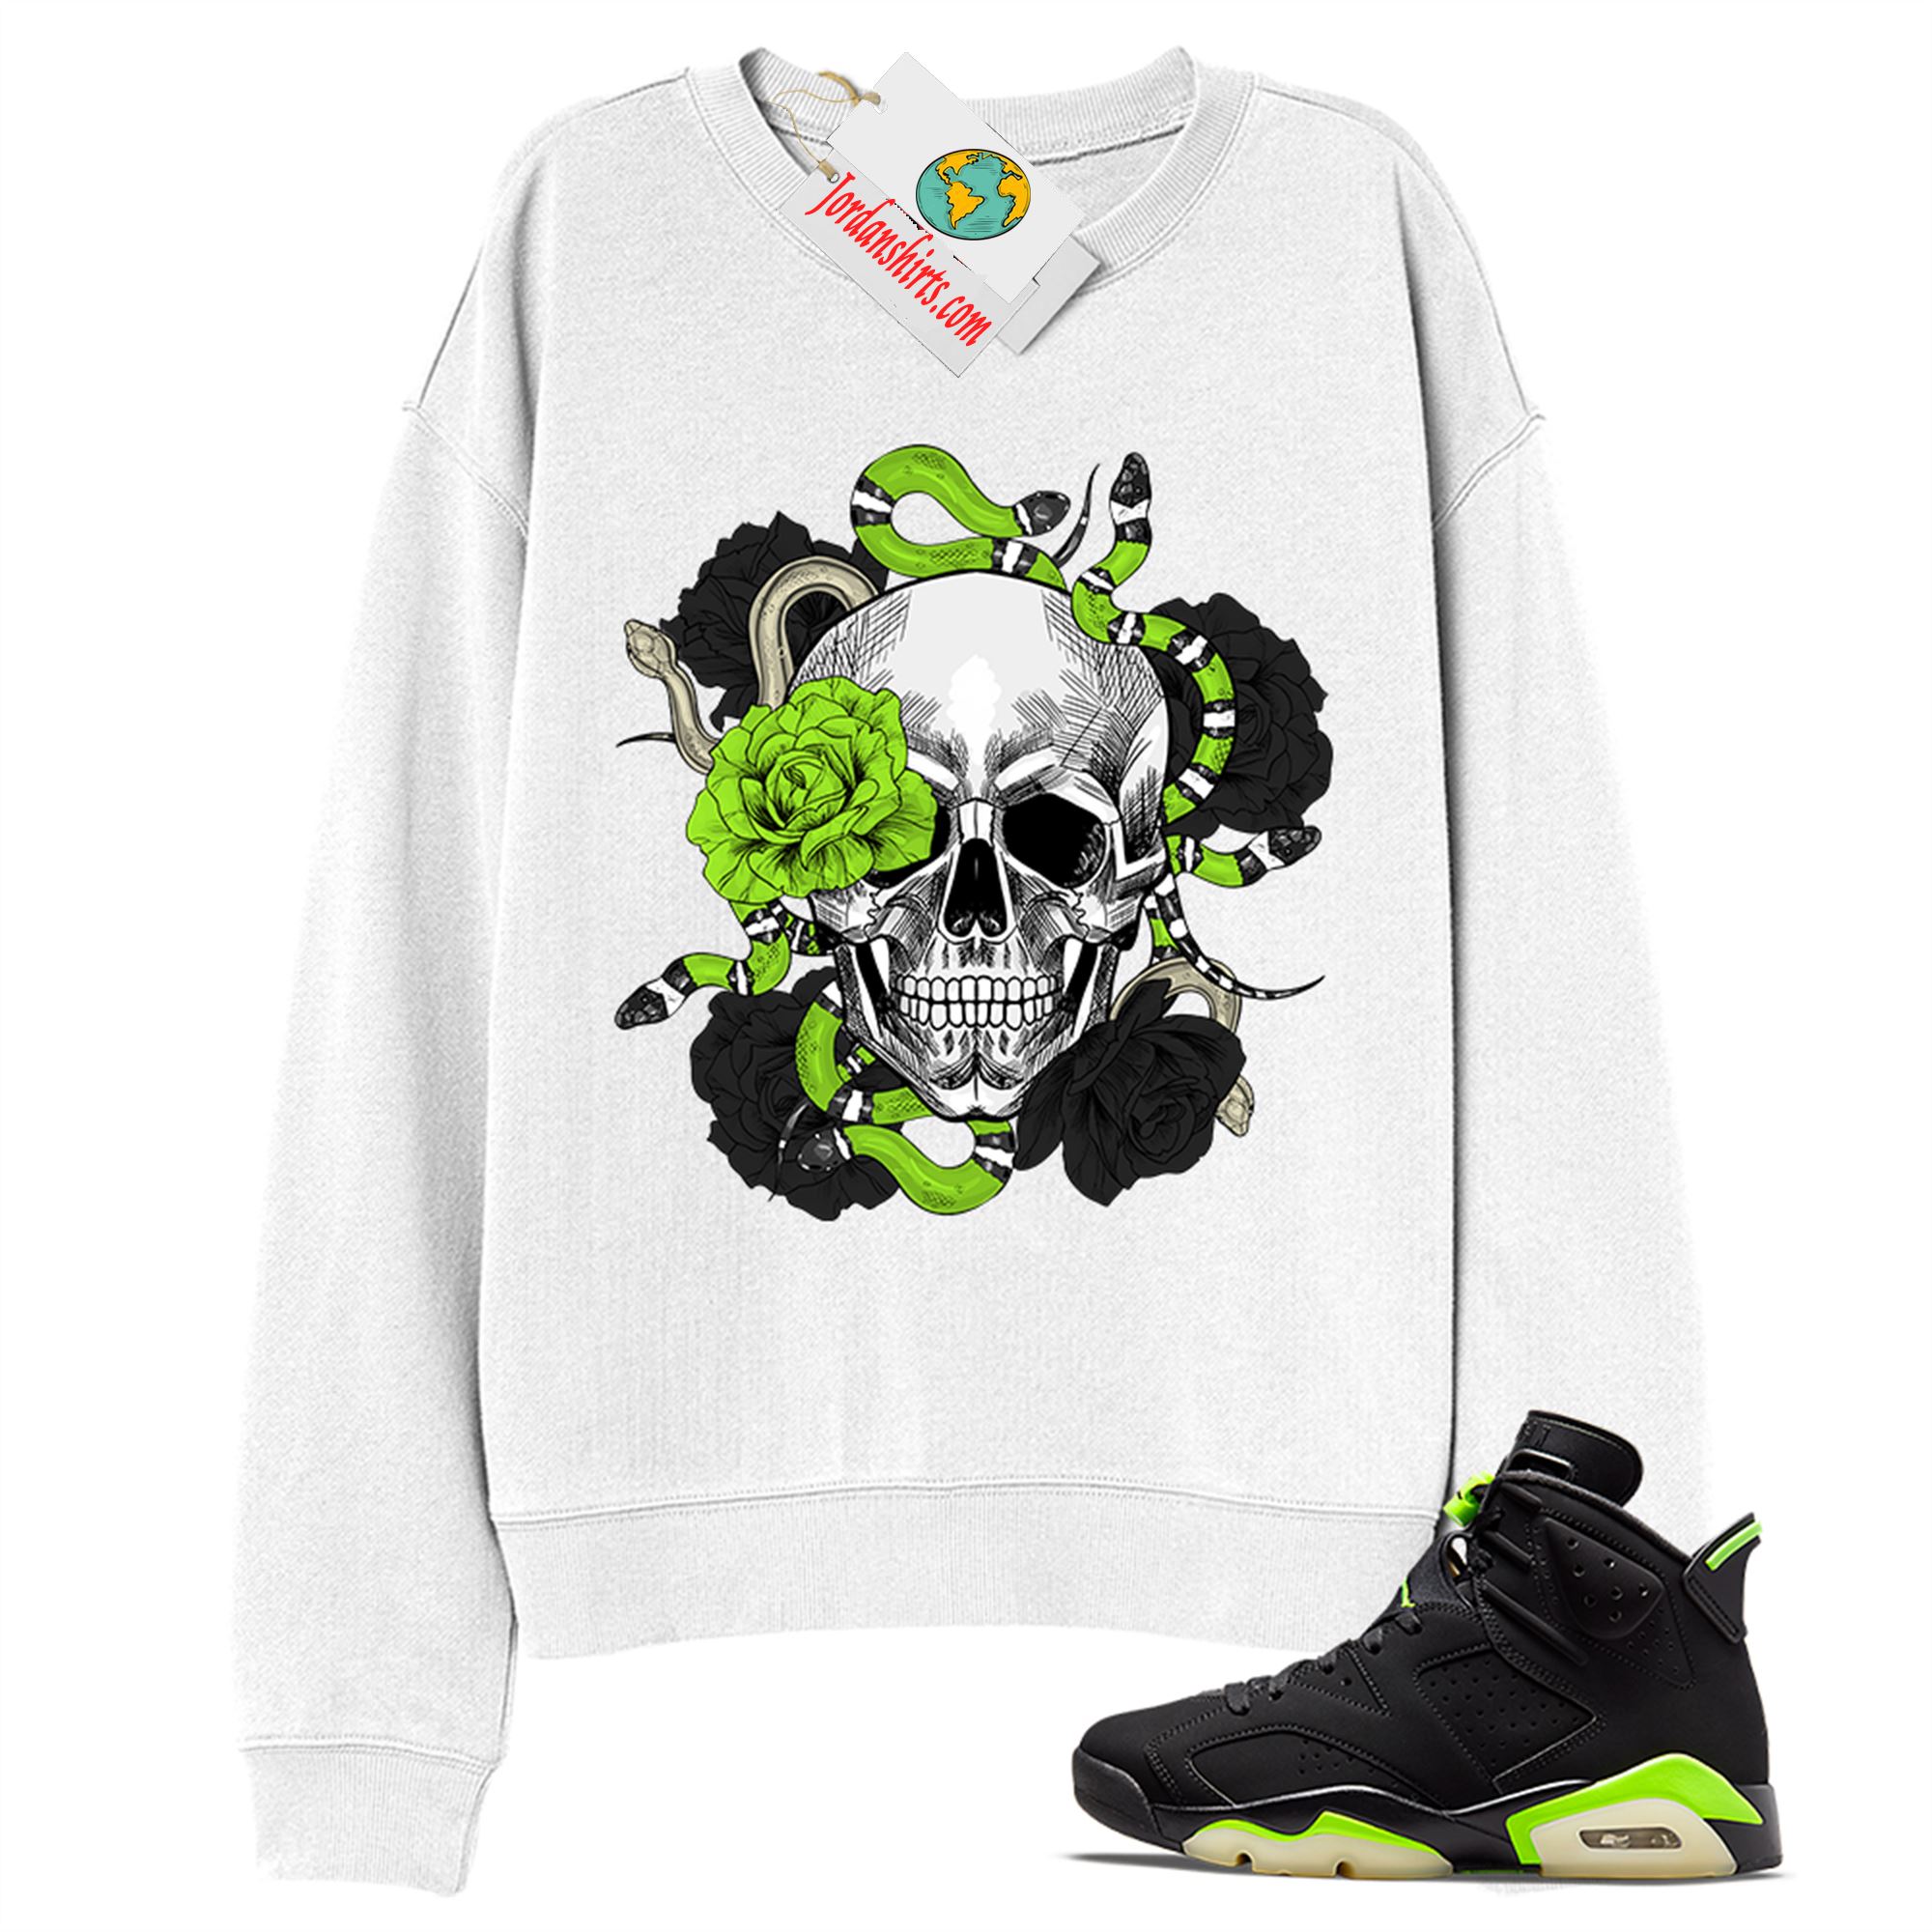 Jordan 6 Sweatshirt, Snake Skull Rose White Sweatshirt Air Jordan 6 Electric Green 6s Plus Size Up To 5xl